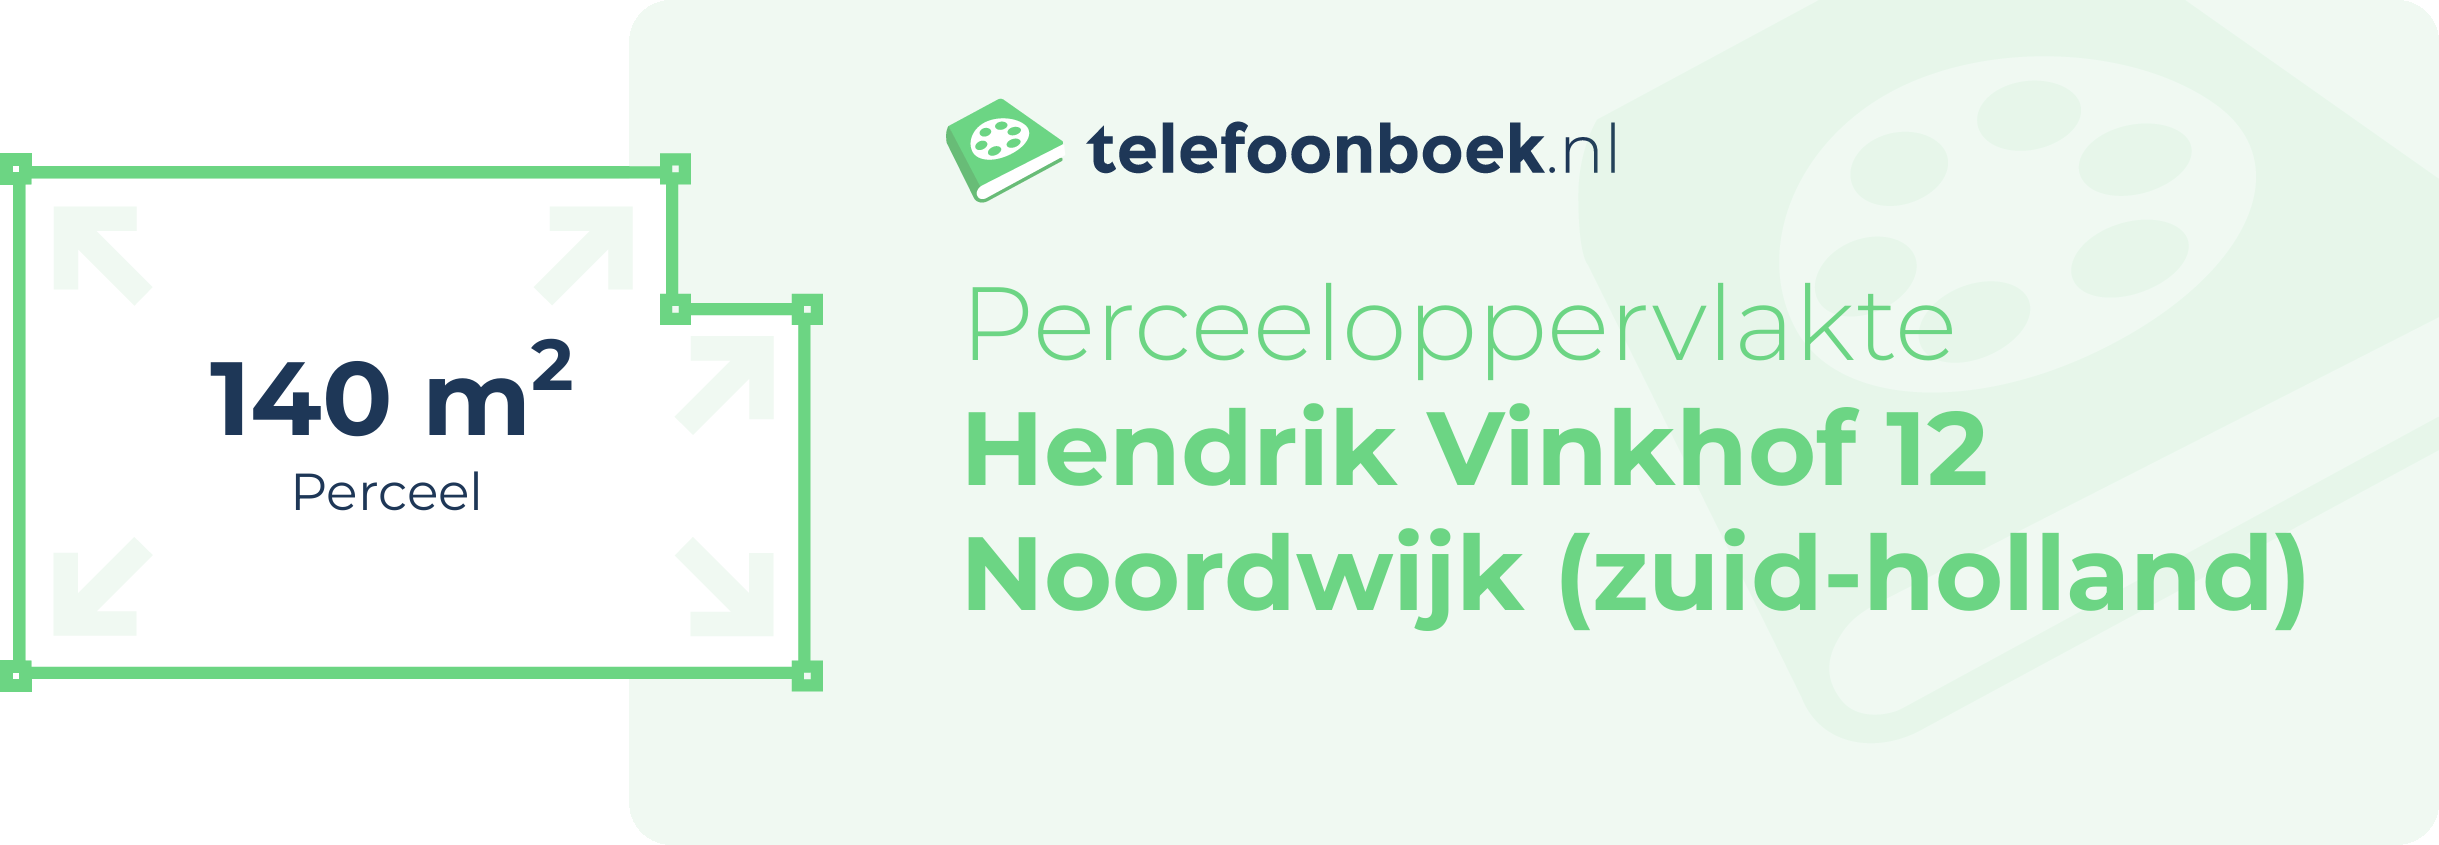 Perceeloppervlakte Hendrik Vinkhof 12 Noordwijk (Zuid-Holland)